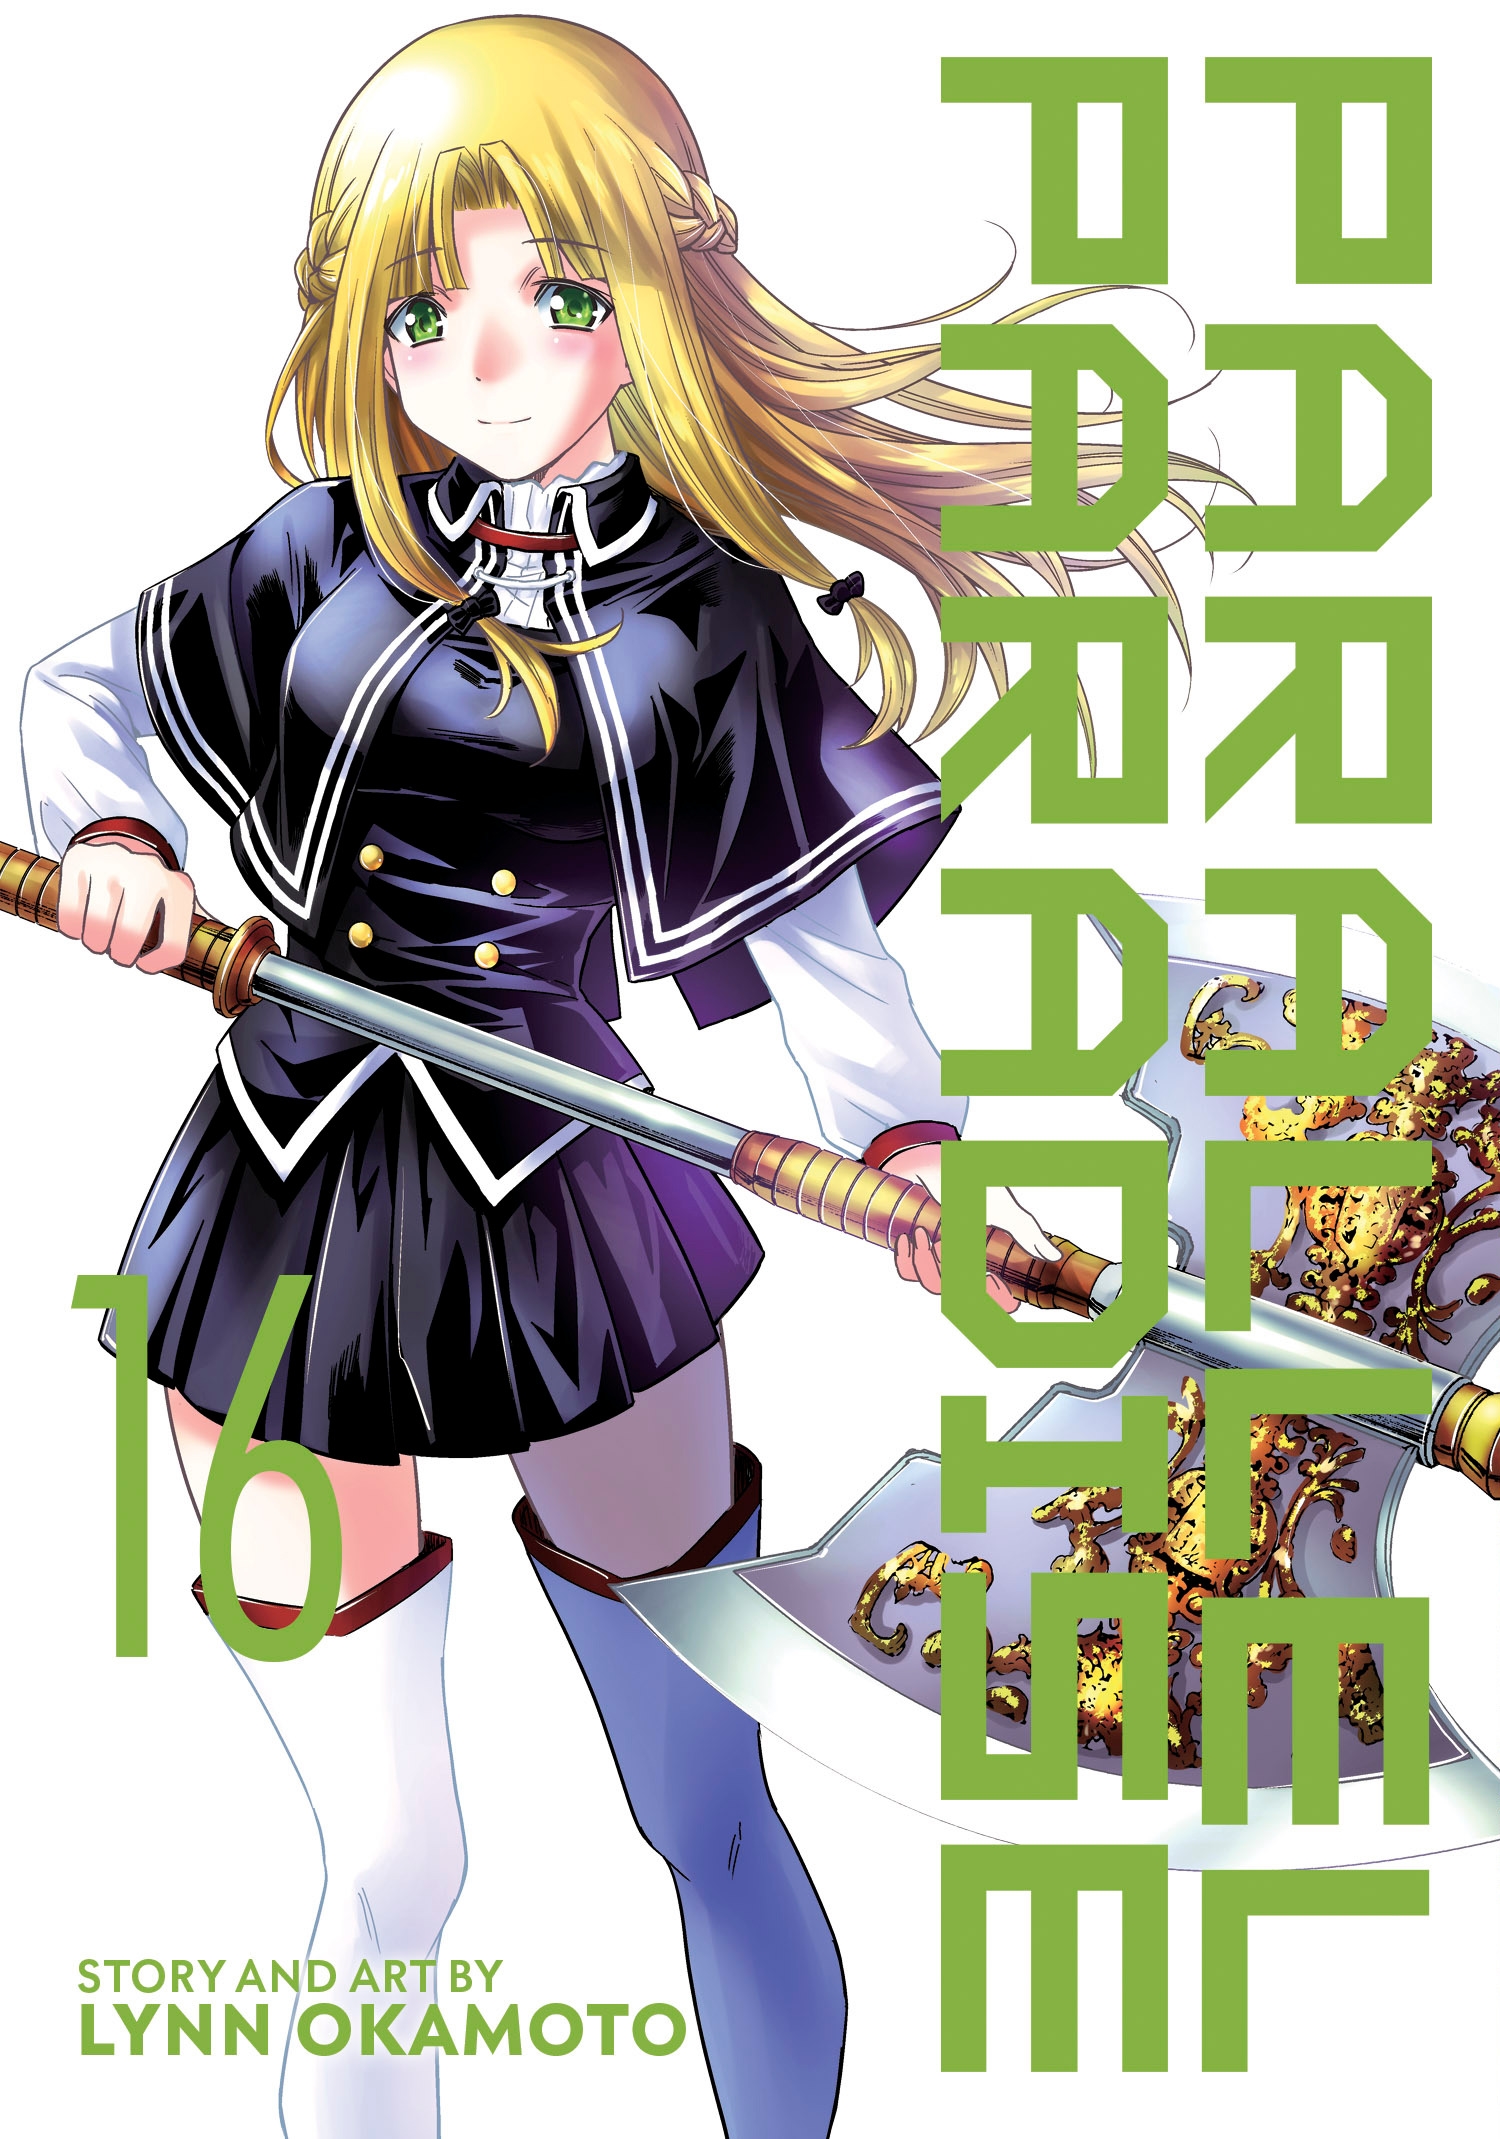 To Love Ru Darkness Manga Volume 16